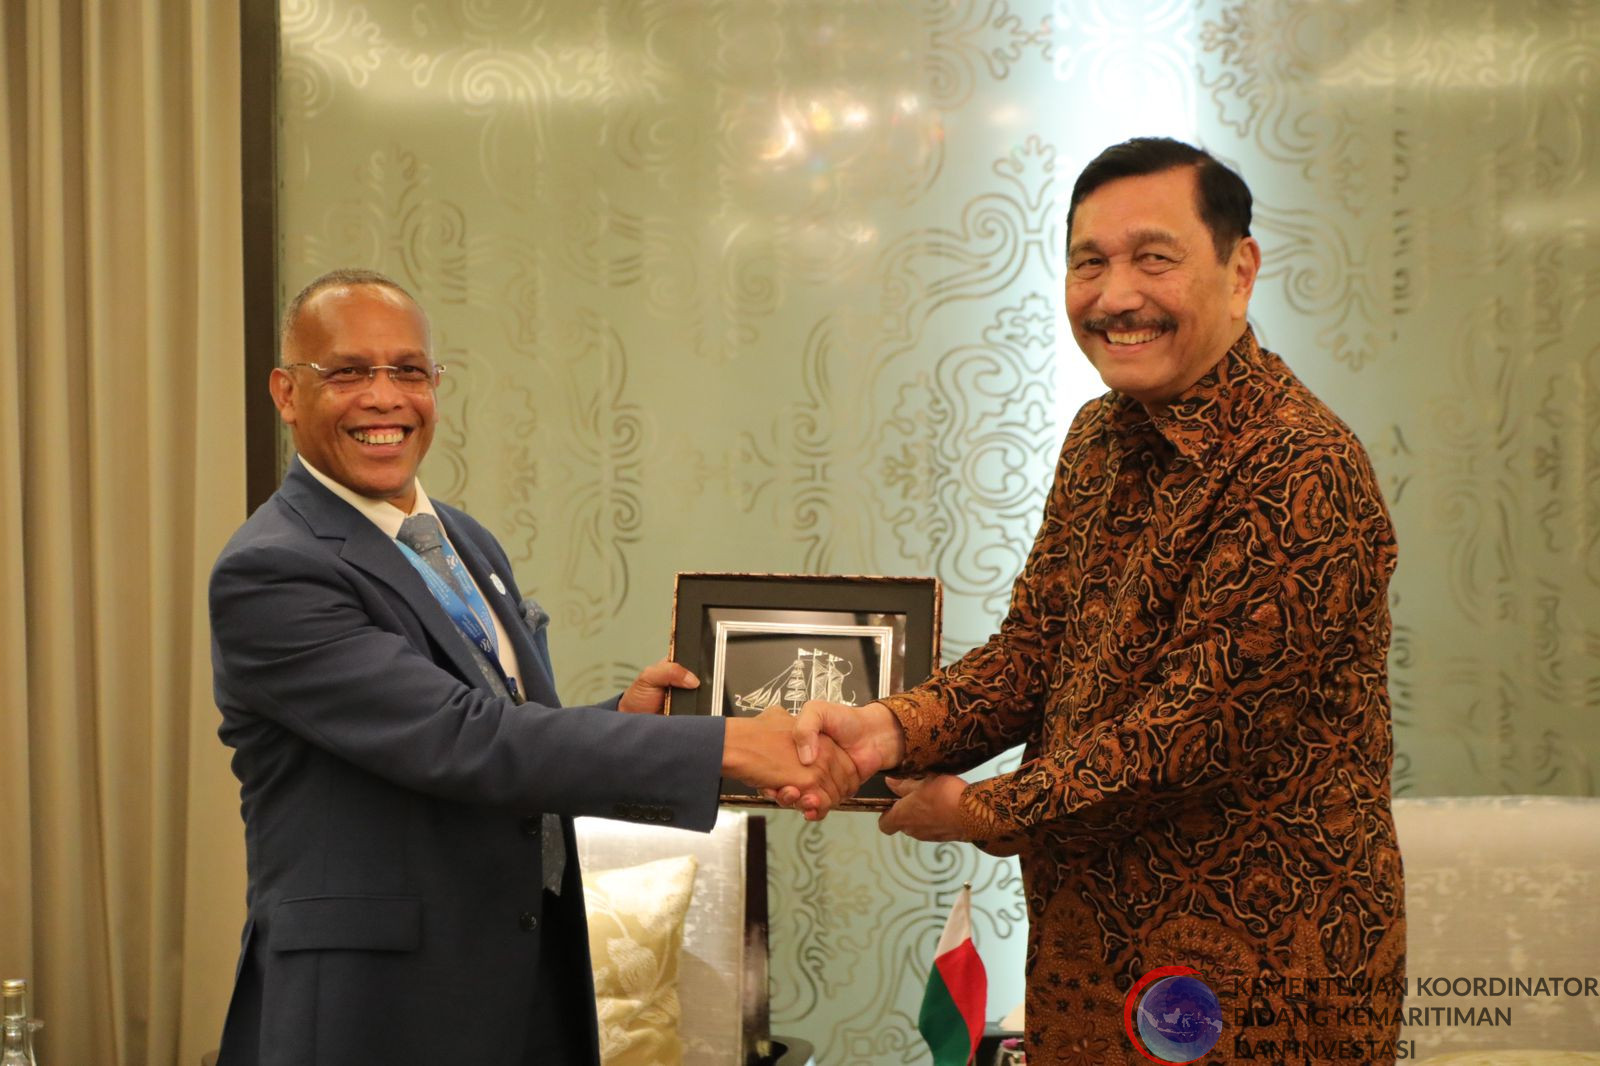 Bersama Menteri Madagaskar, Menko Luhut Bahas Wilayah Perairan Strategis